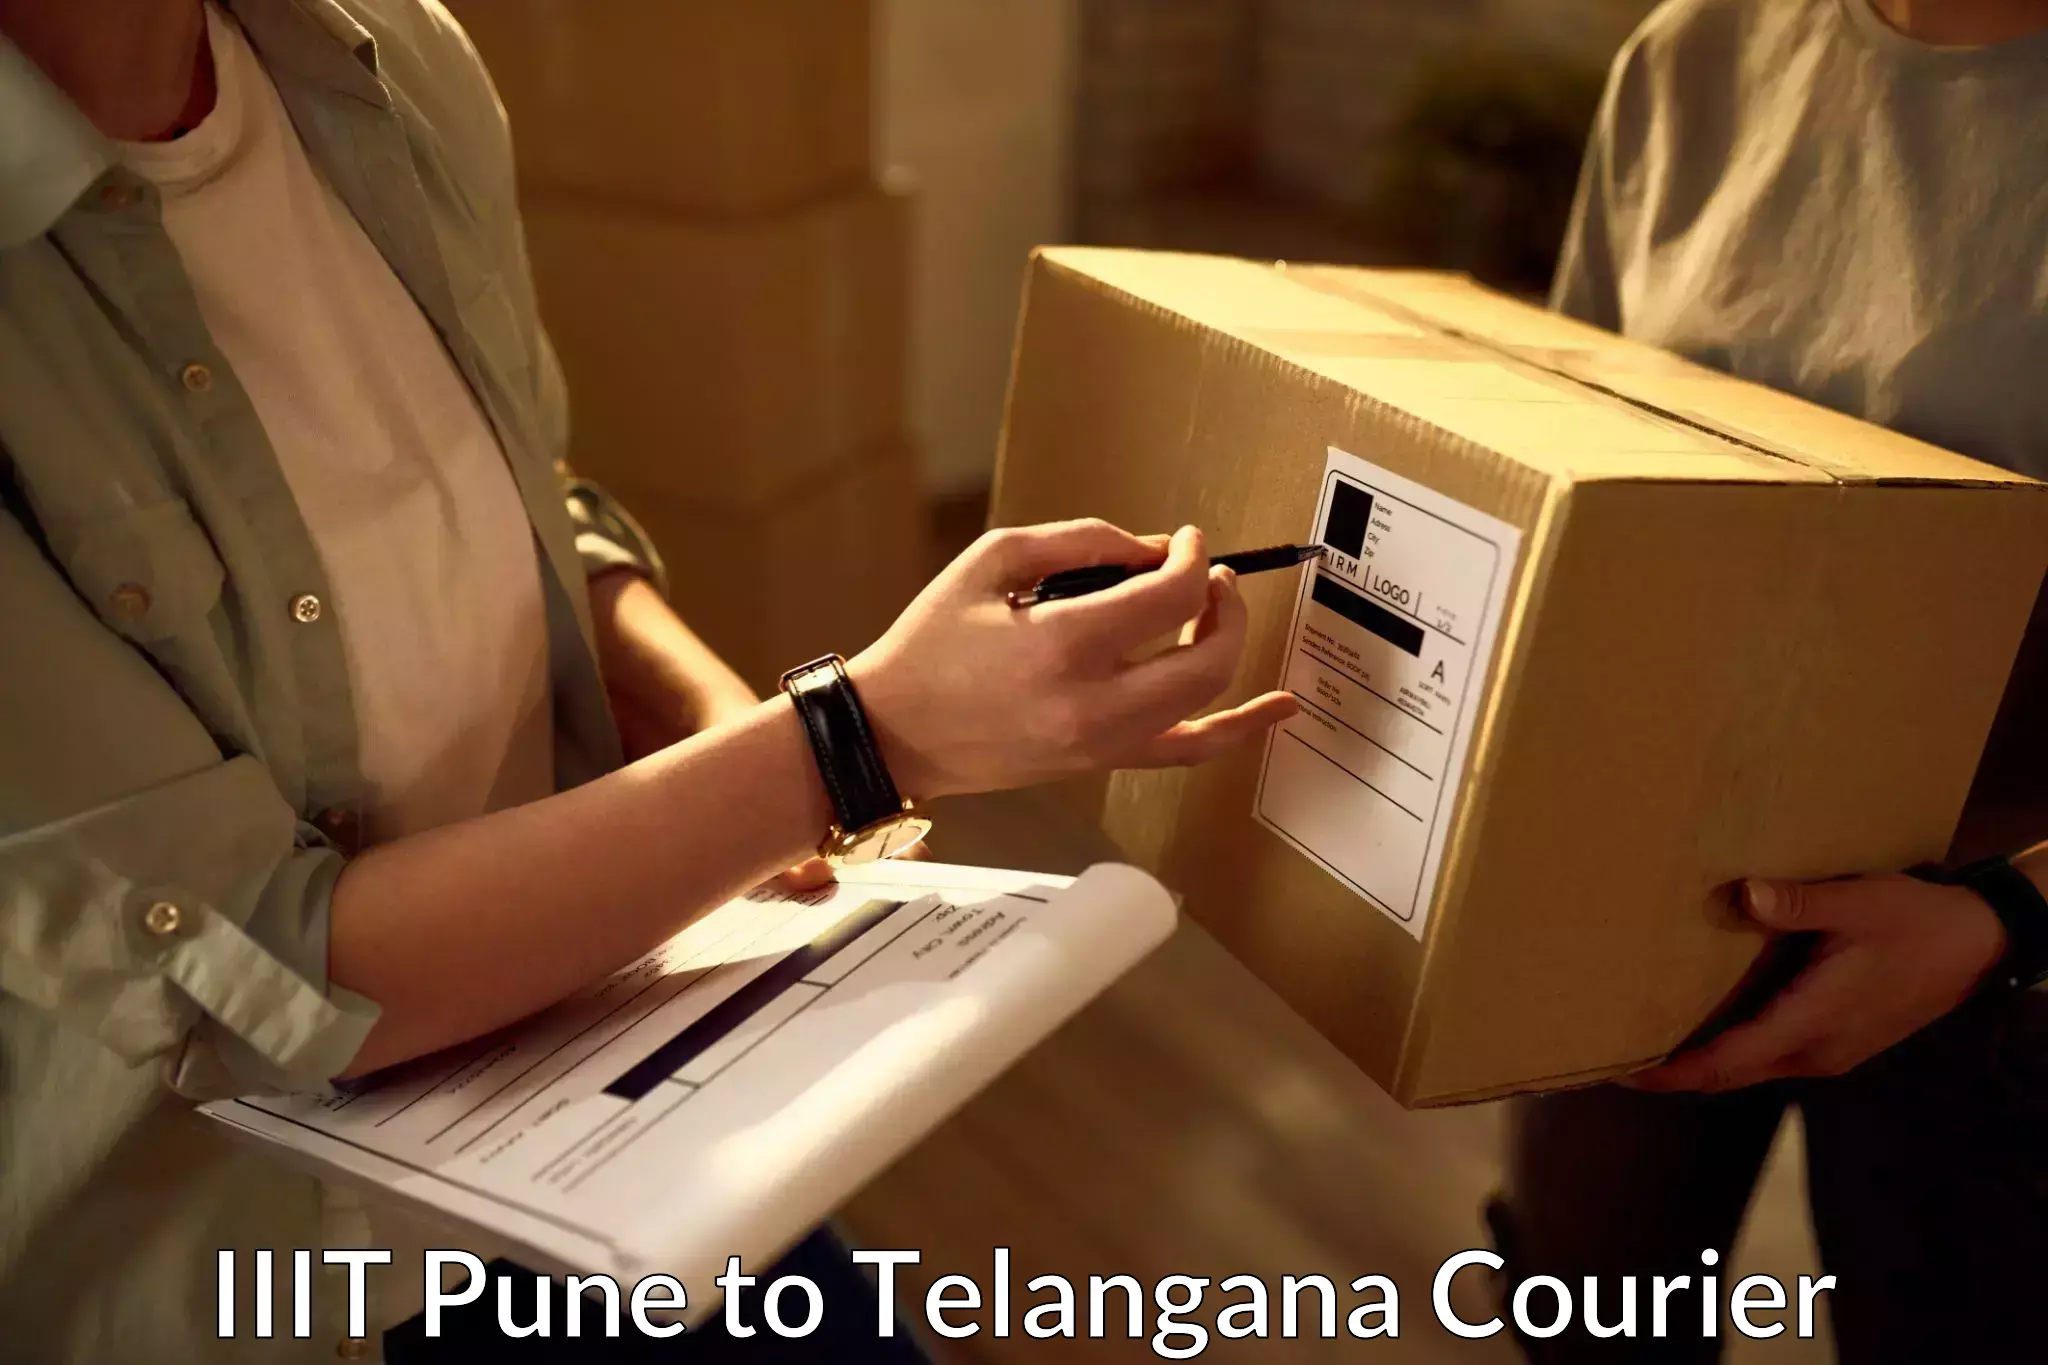 Courier app in IIIT Pune to Vikarabad